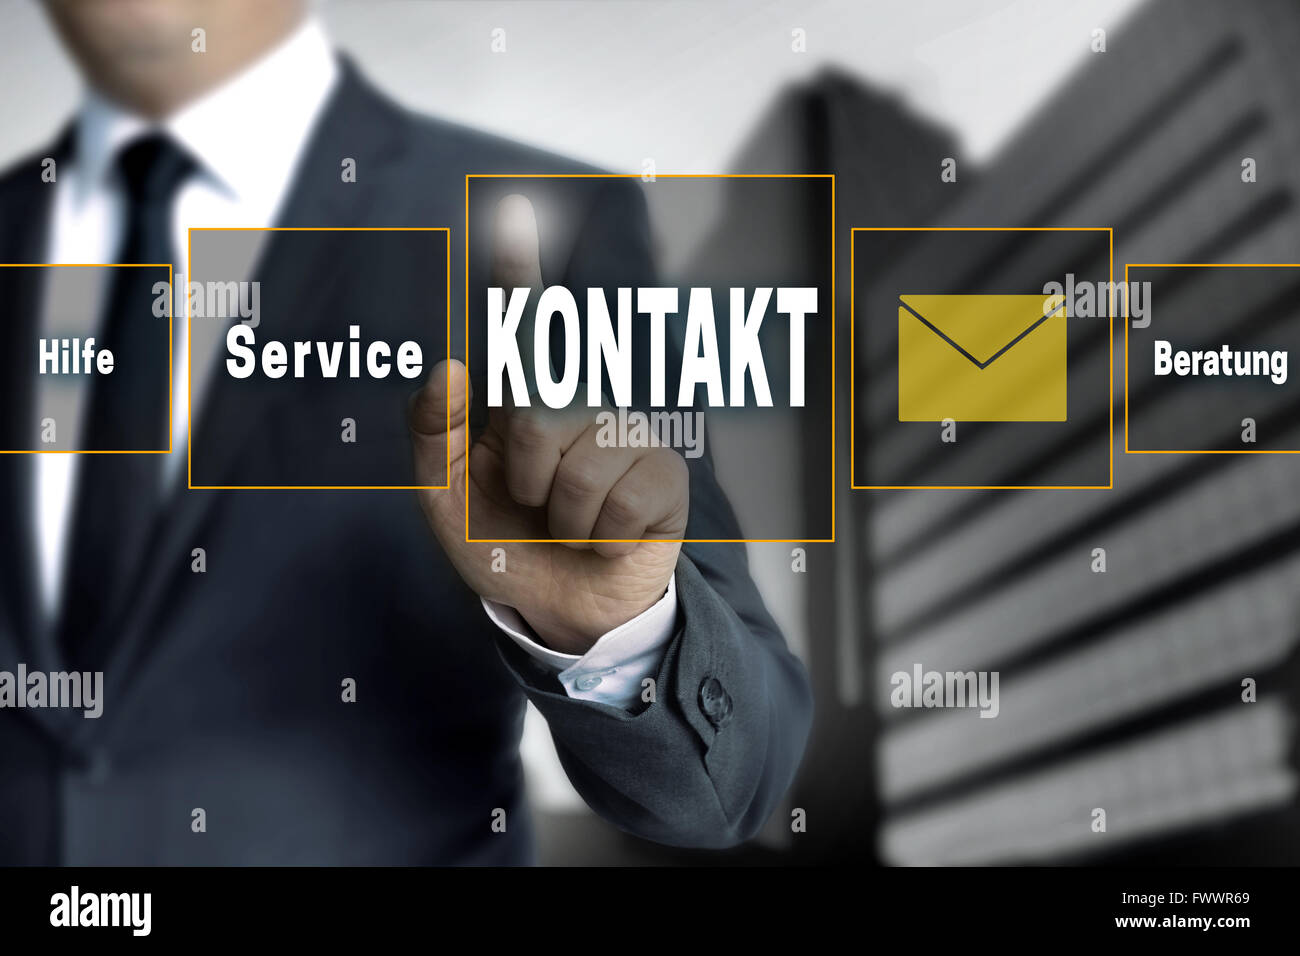 Kontakt, Hilfe, Beratung, service (en allemand langue contact, aide, conseil, service) l'écran tactile est exploité par l'homme d'affaires Banque D'Images